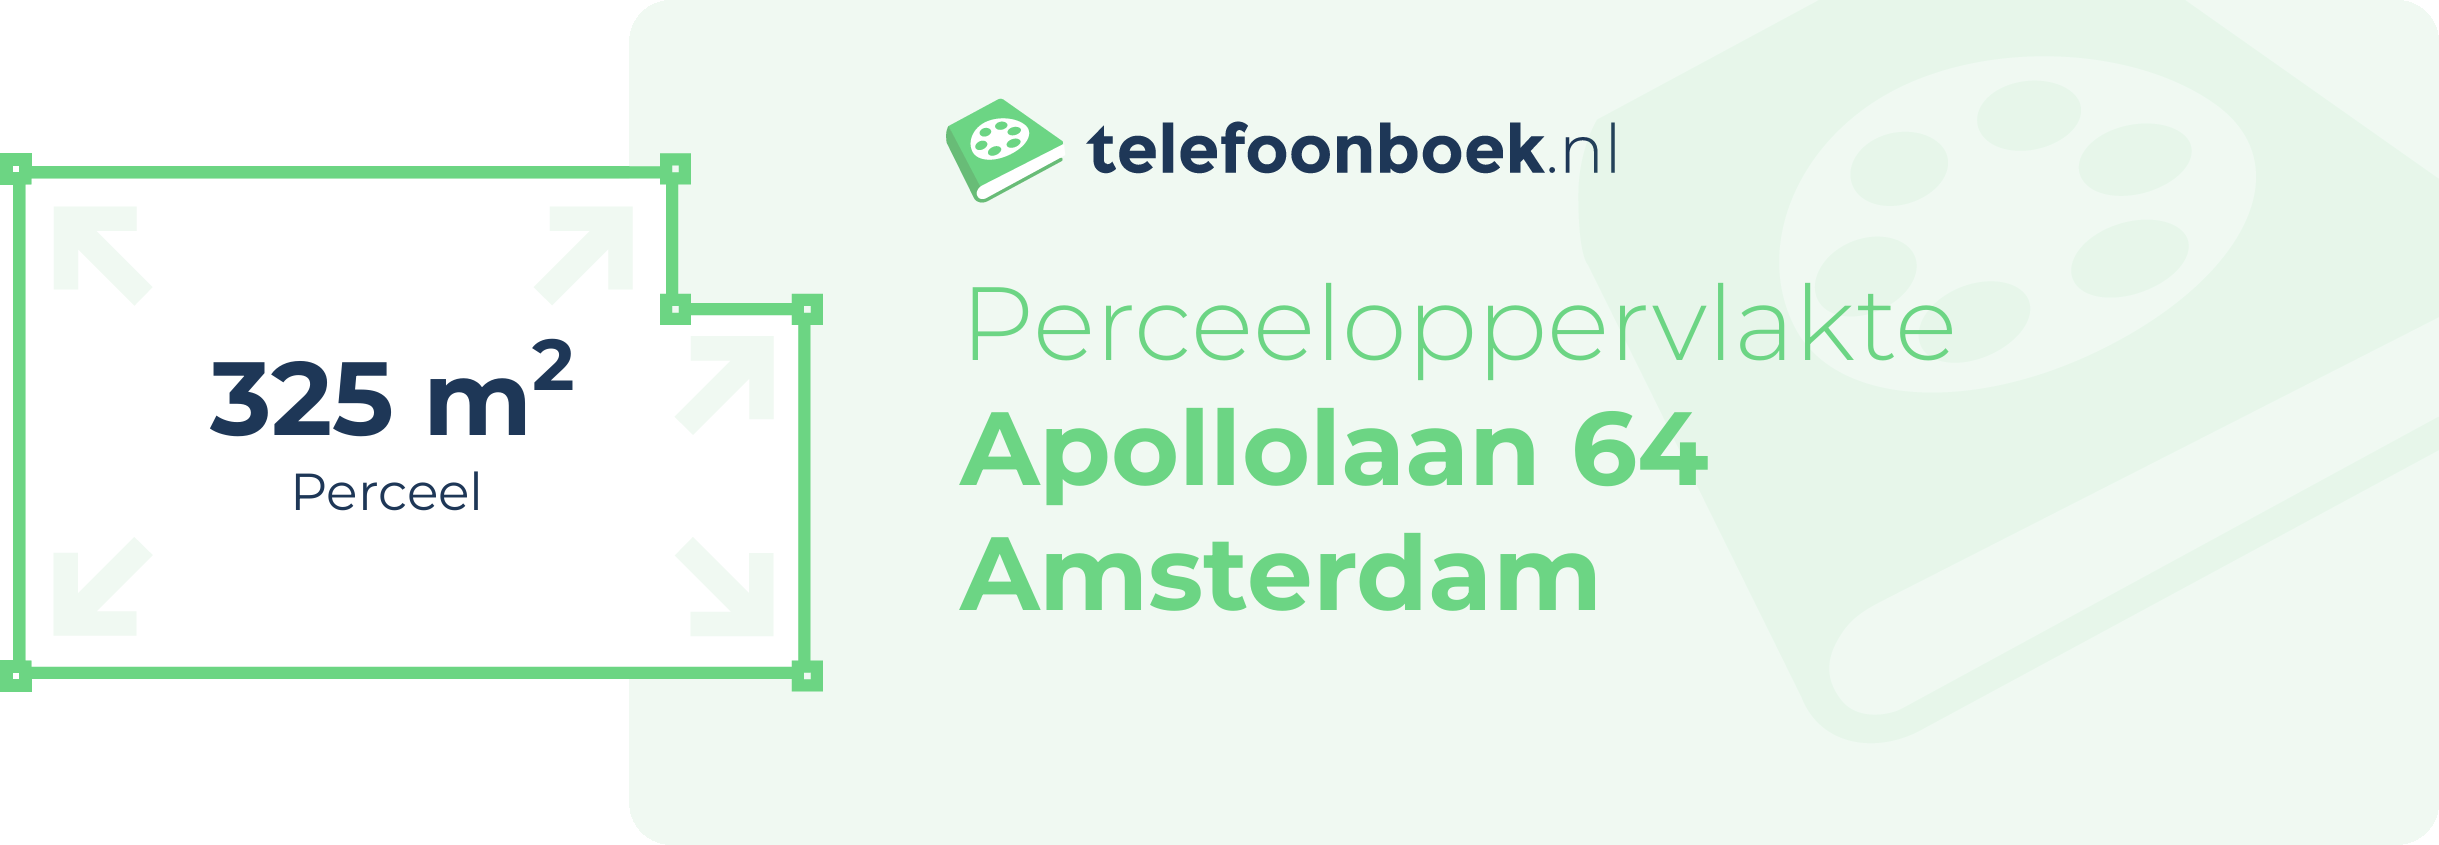 Perceeloppervlakte Apollolaan 64 Amsterdam